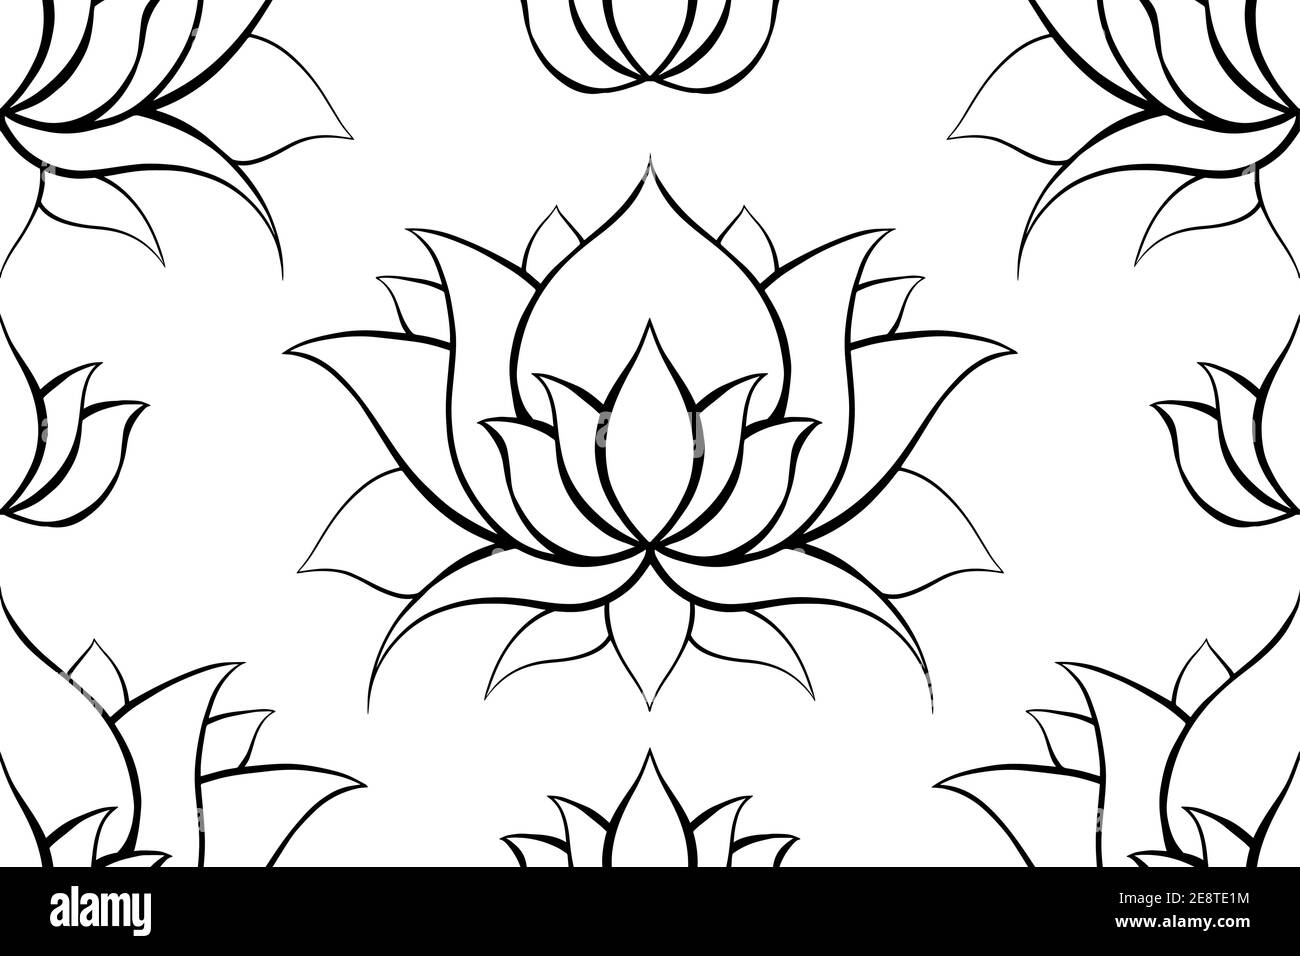 Filigraner Hintergrund mit Konturen von Lotos. Umreißen Sie Seerosen auf weiß. Zarte Naturtapete für Spa und Yoga-Zentren. Vektor florale Textur Stock Vektor